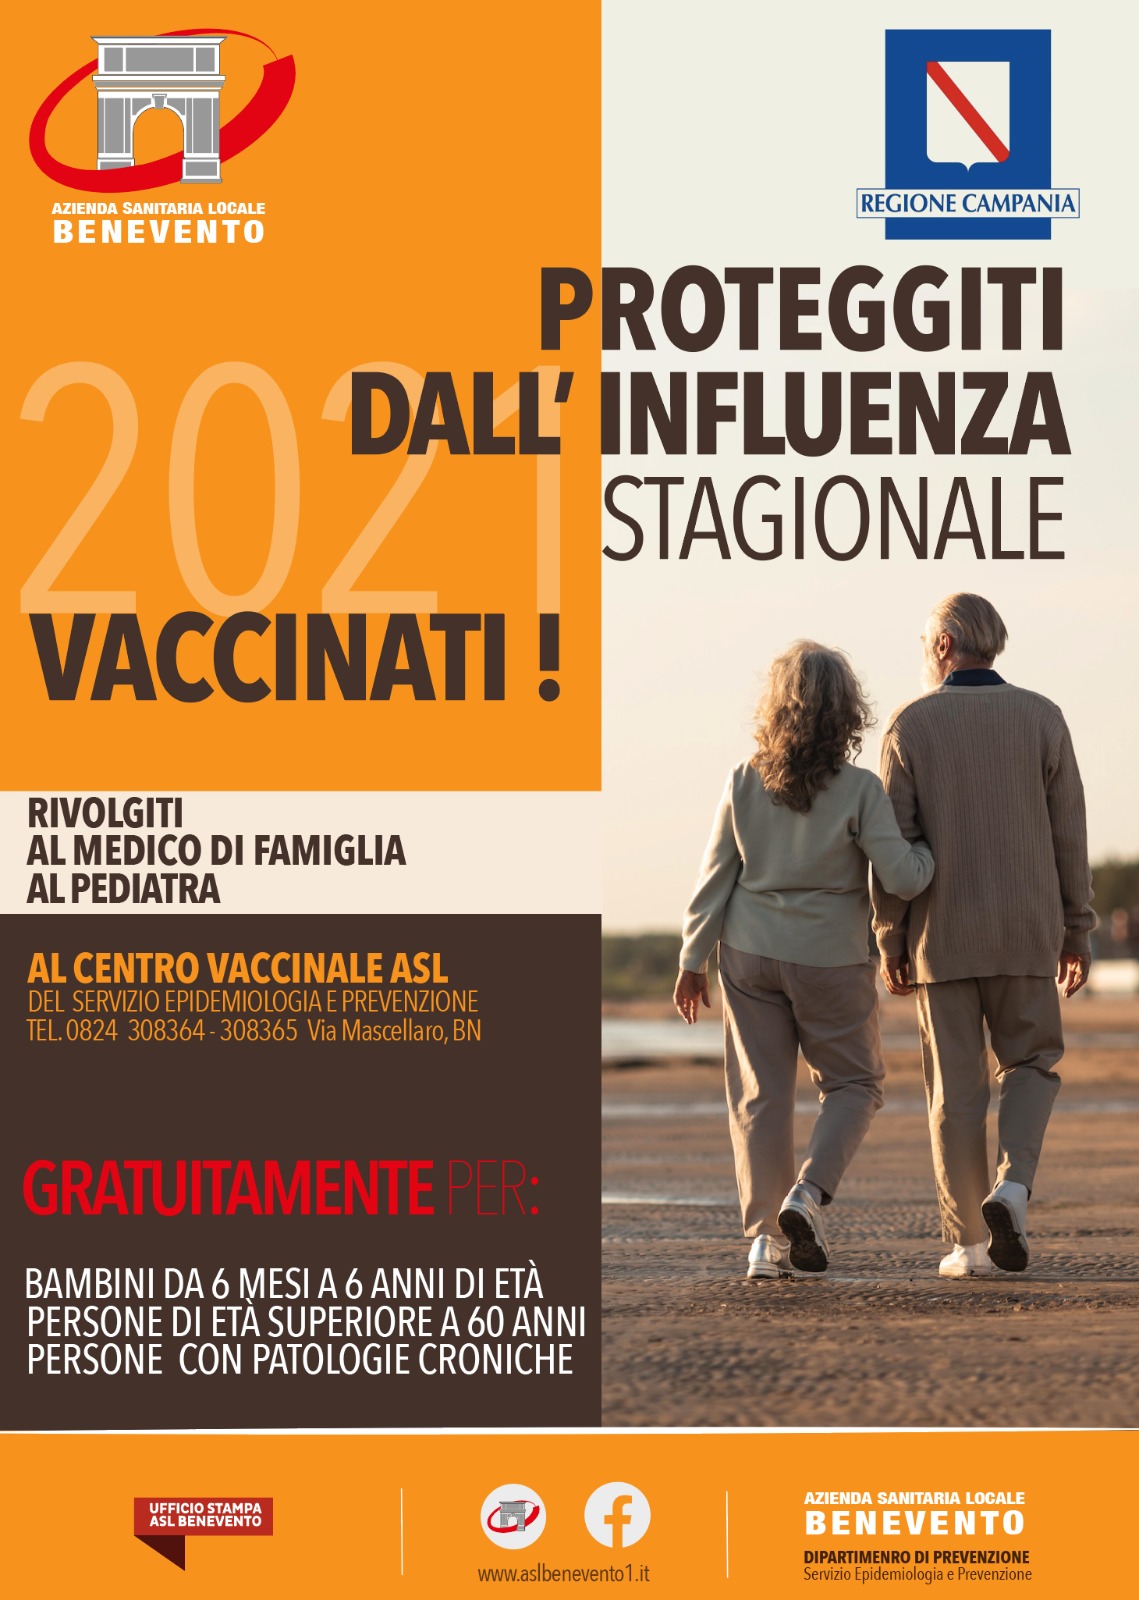 Asl Benevento: al via la campagna vaccinale contro l’influenza stagionale